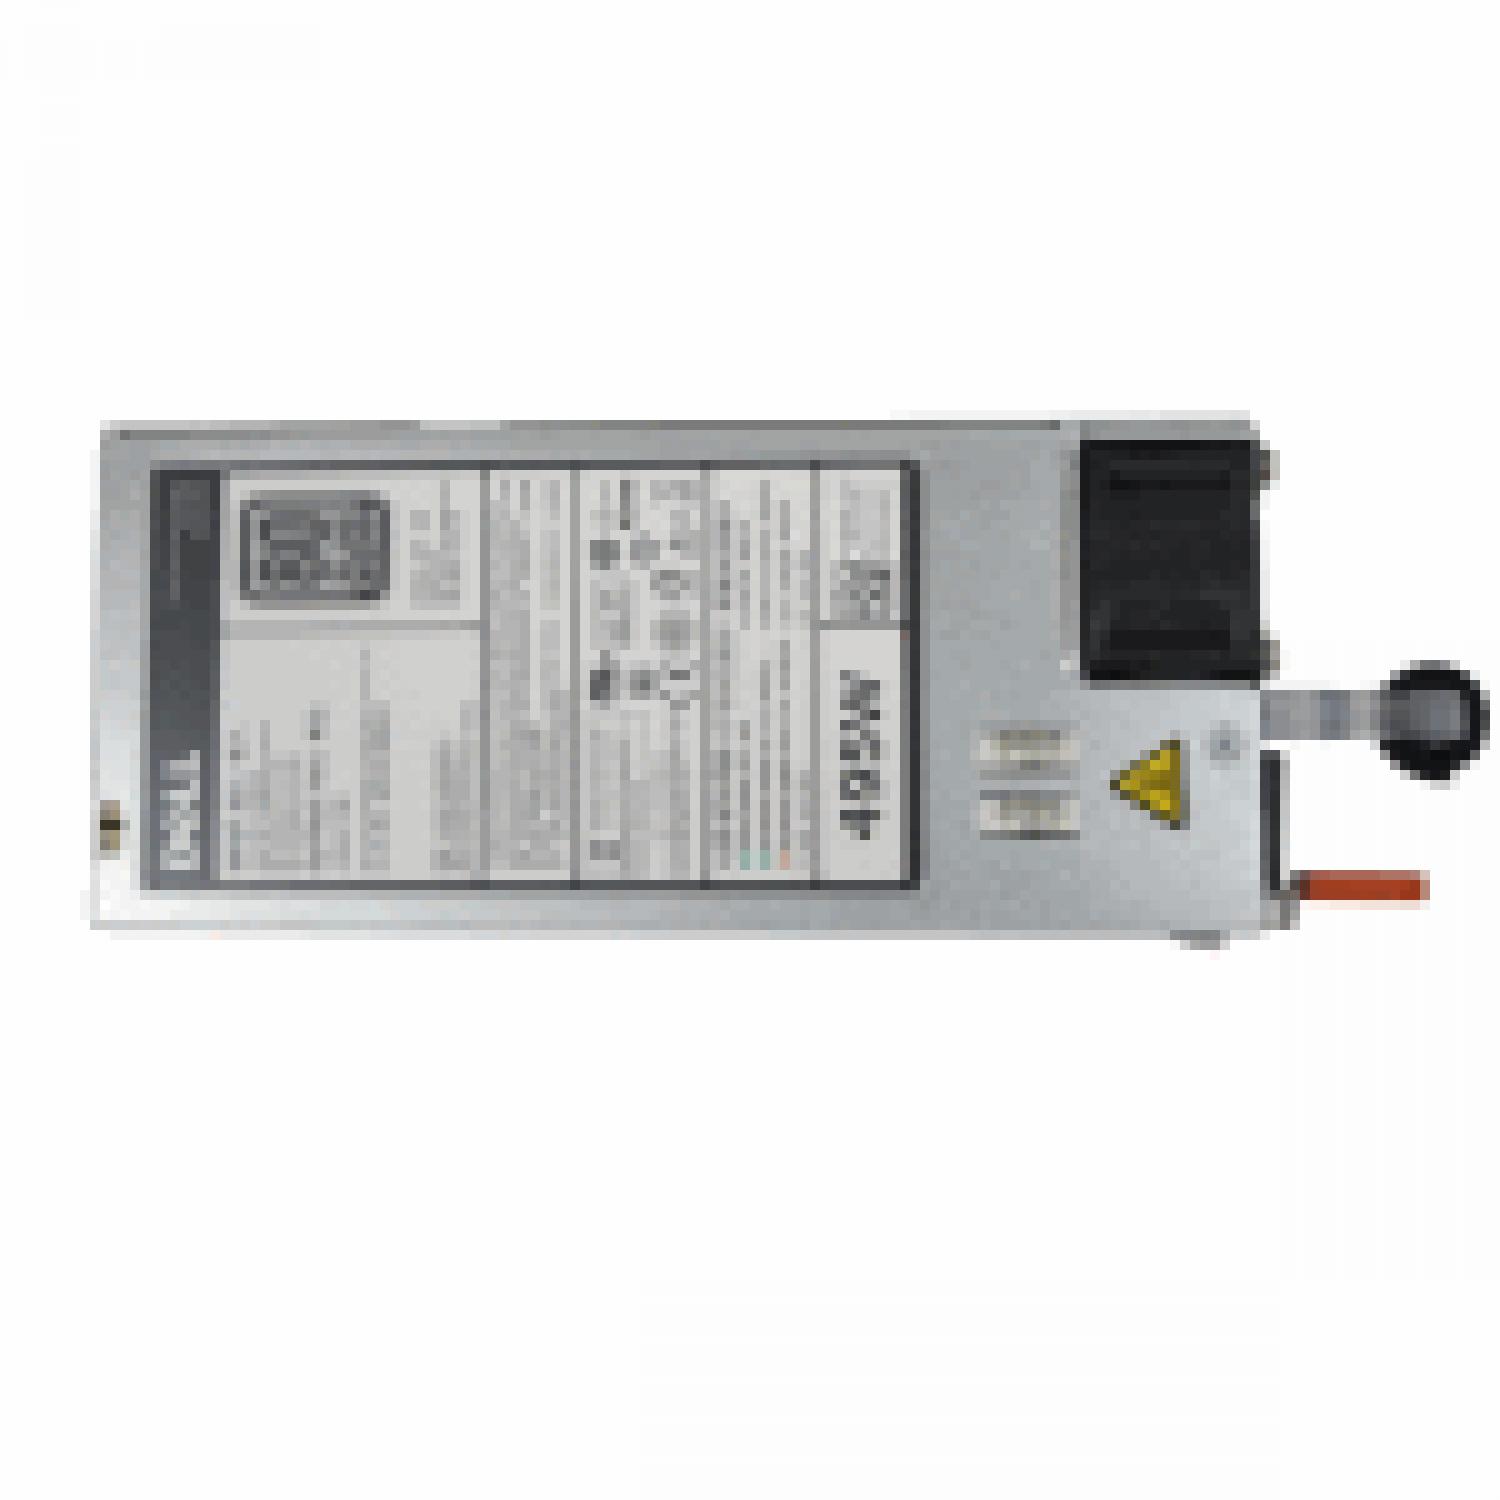 Блок питания DELL Hot Plug Redundant Power Supply 495W for R540/R640/R740/R740XD/T430/T440/T640/R530/R630/R730/R730xd/T330/T430/T630 w/o Power Cord (analog 450-ADWP, 450-AEEP)